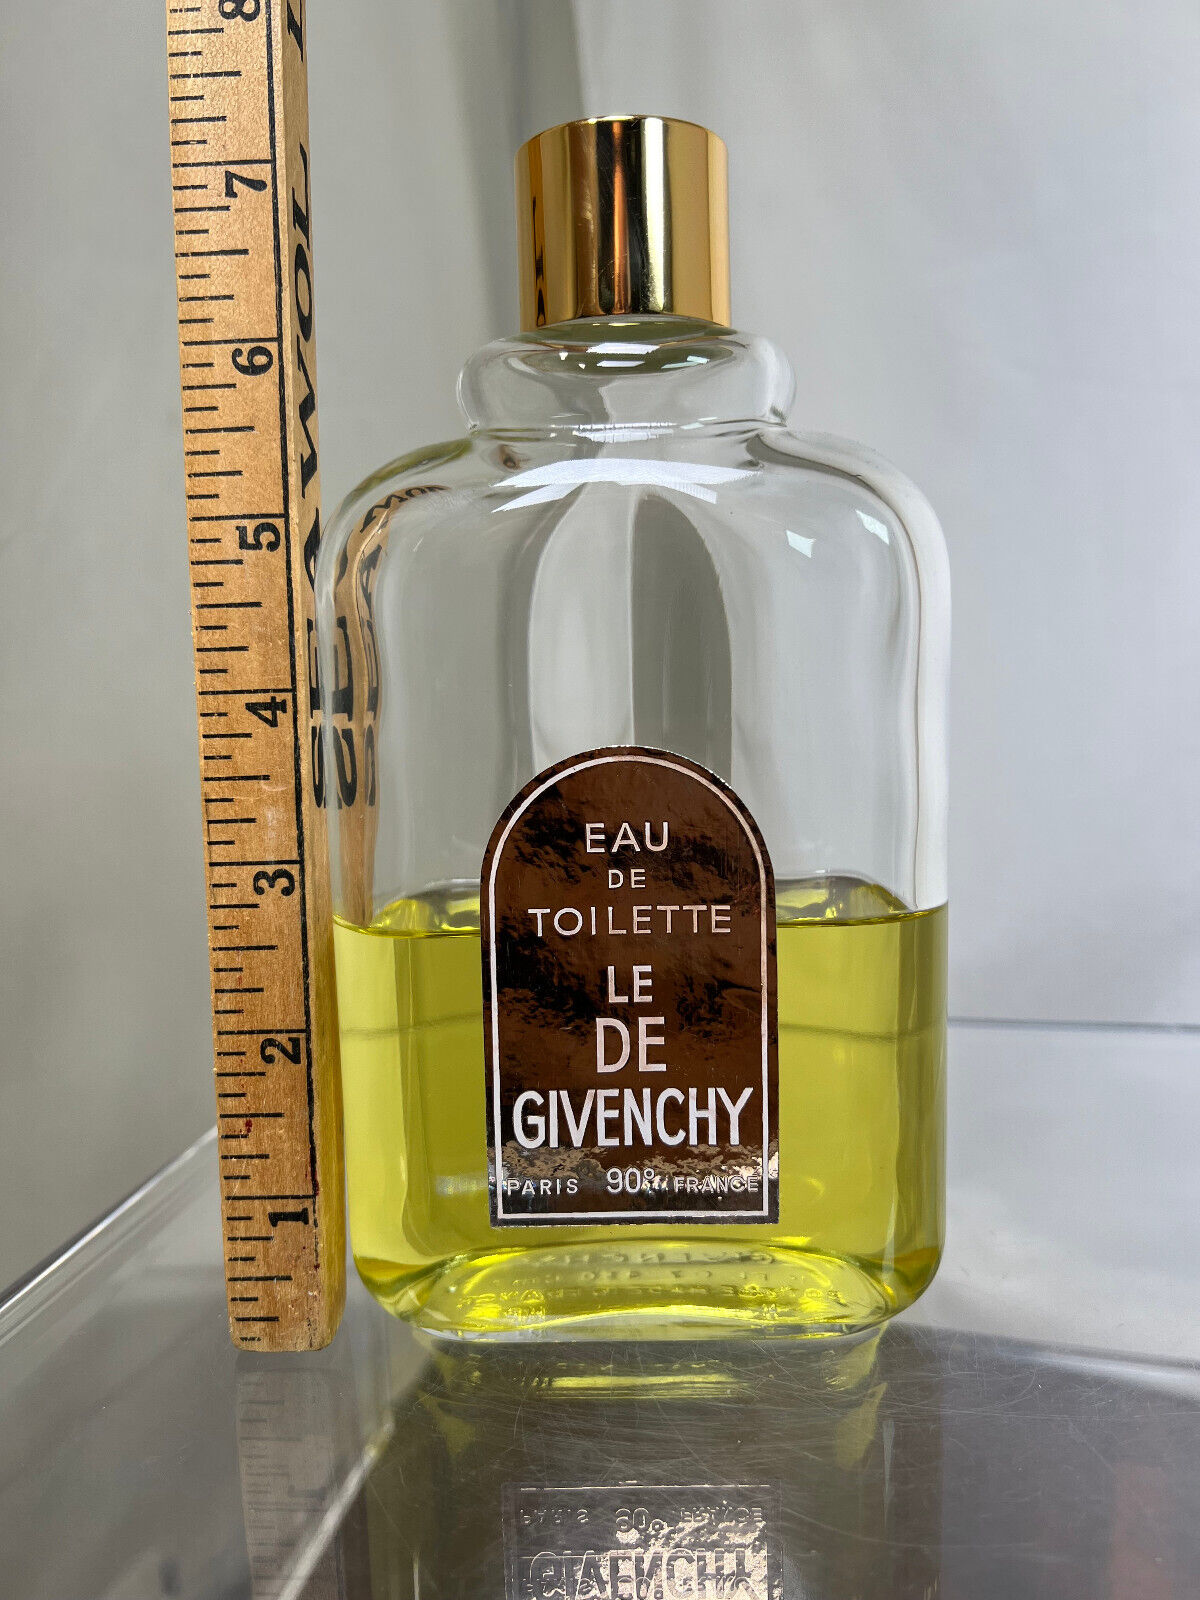 Vtg Le De Givenchy Eau De Toilette Splash Fragrance 15 oz Glass Bottle 40% Full